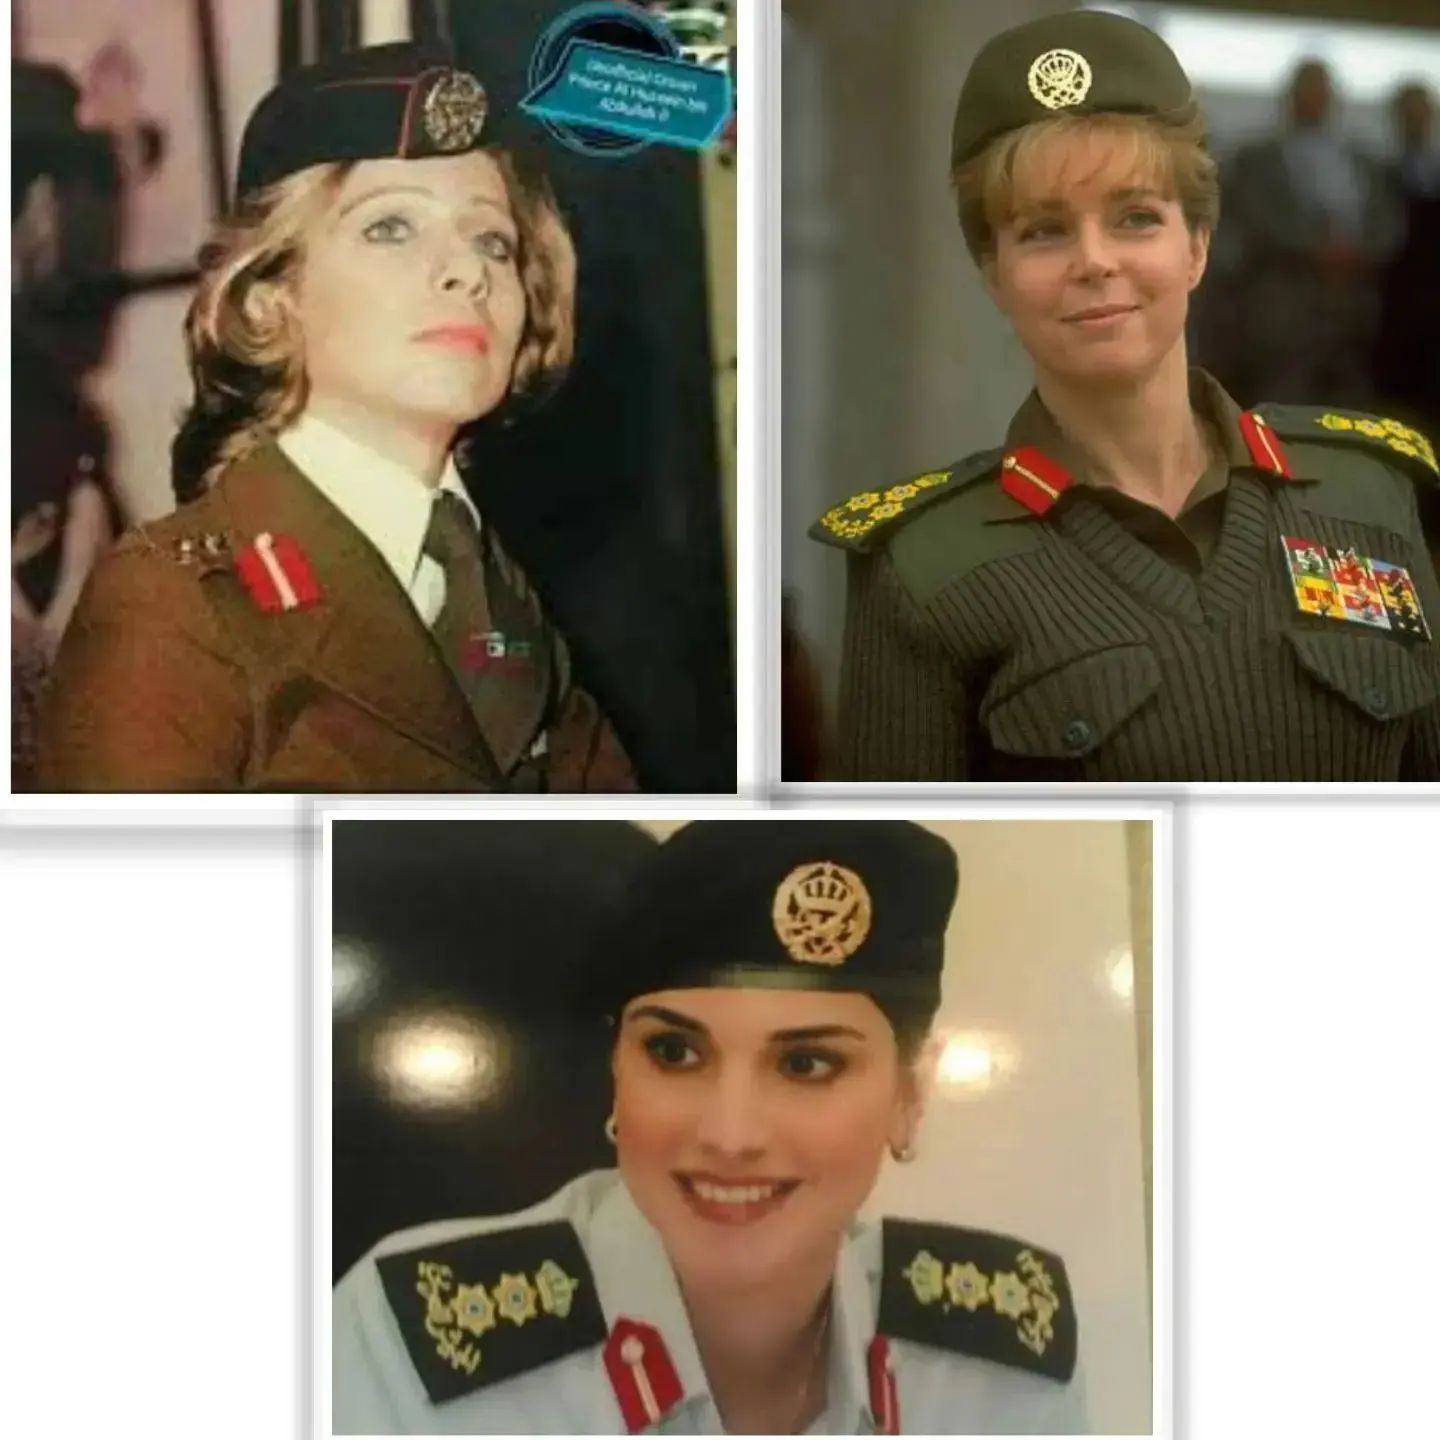 الملكة رانيا وهي بالزي العسكري، كما ظهرن الملكتين السابقتين، الراحلة علياء طوقان والملكة نور، زوجتي الملك الراحل الحسين بن طلال